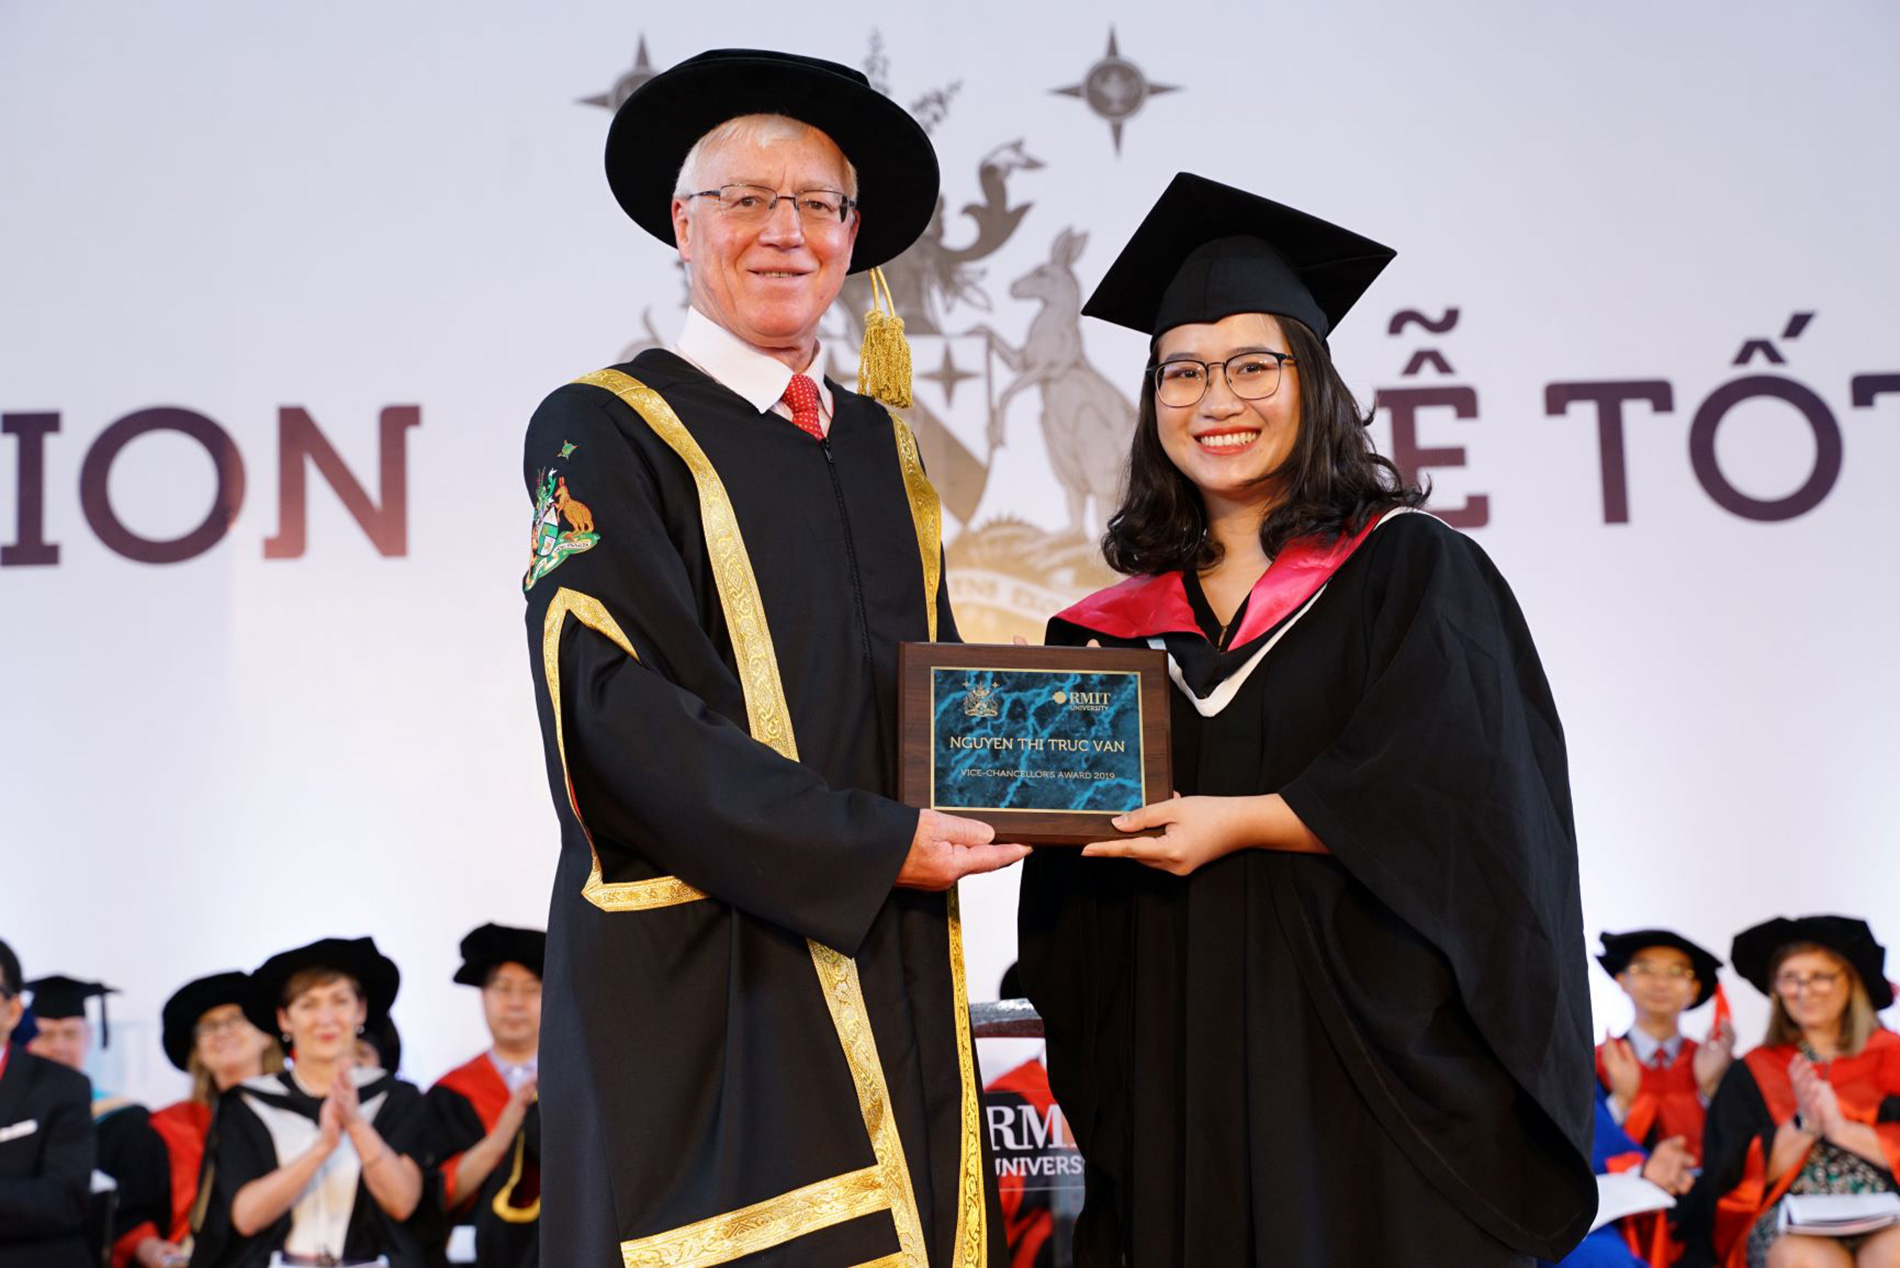 Nguyễn Thị Trúc Vân – tốt nghiệp từ ngành Truyền thông chuyên nghiệp - nhận giải Sinh viên Xuất sắc tại cơ sở Nam Sài Gòn năm nay nhờ vào đạt thành tích nổi trội. 